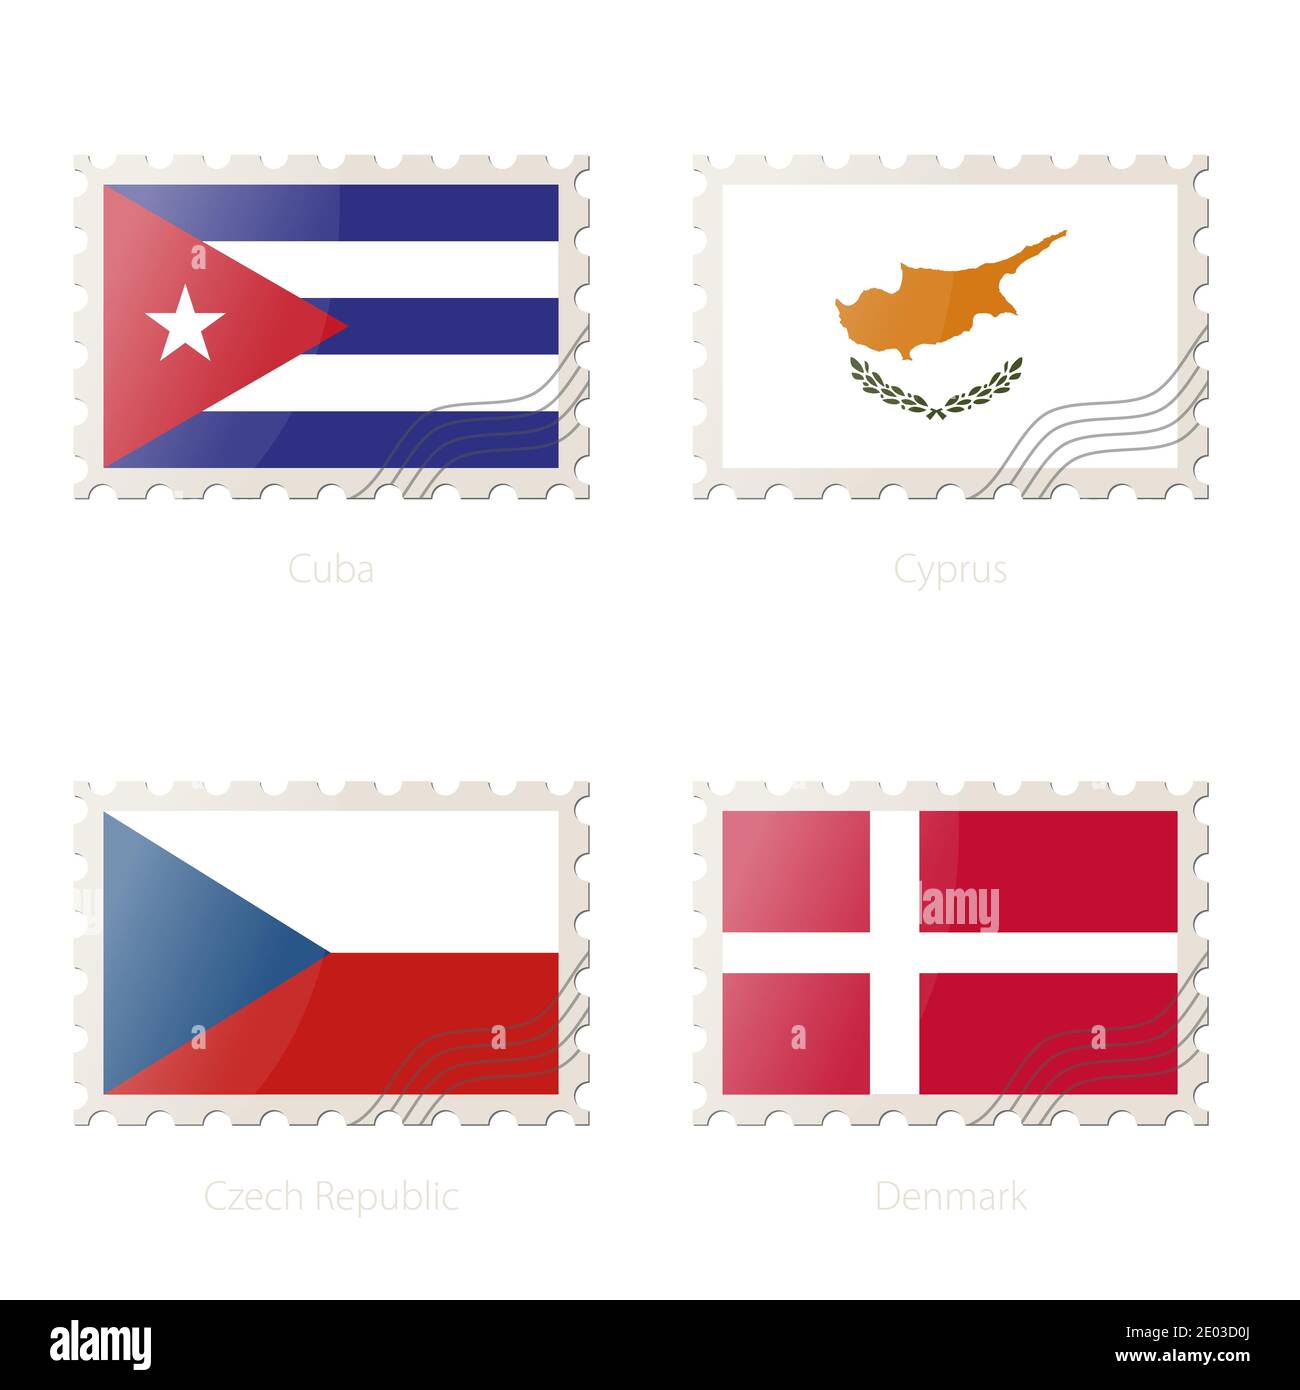 Timbre-poste avec l'image de Cuba, Chypre, République tchèque, drapeau du Danemark. République tchèque, Danemark, Cuba, Chypre drapeau Postage sur fond blanc avec Illustration de Vecteur